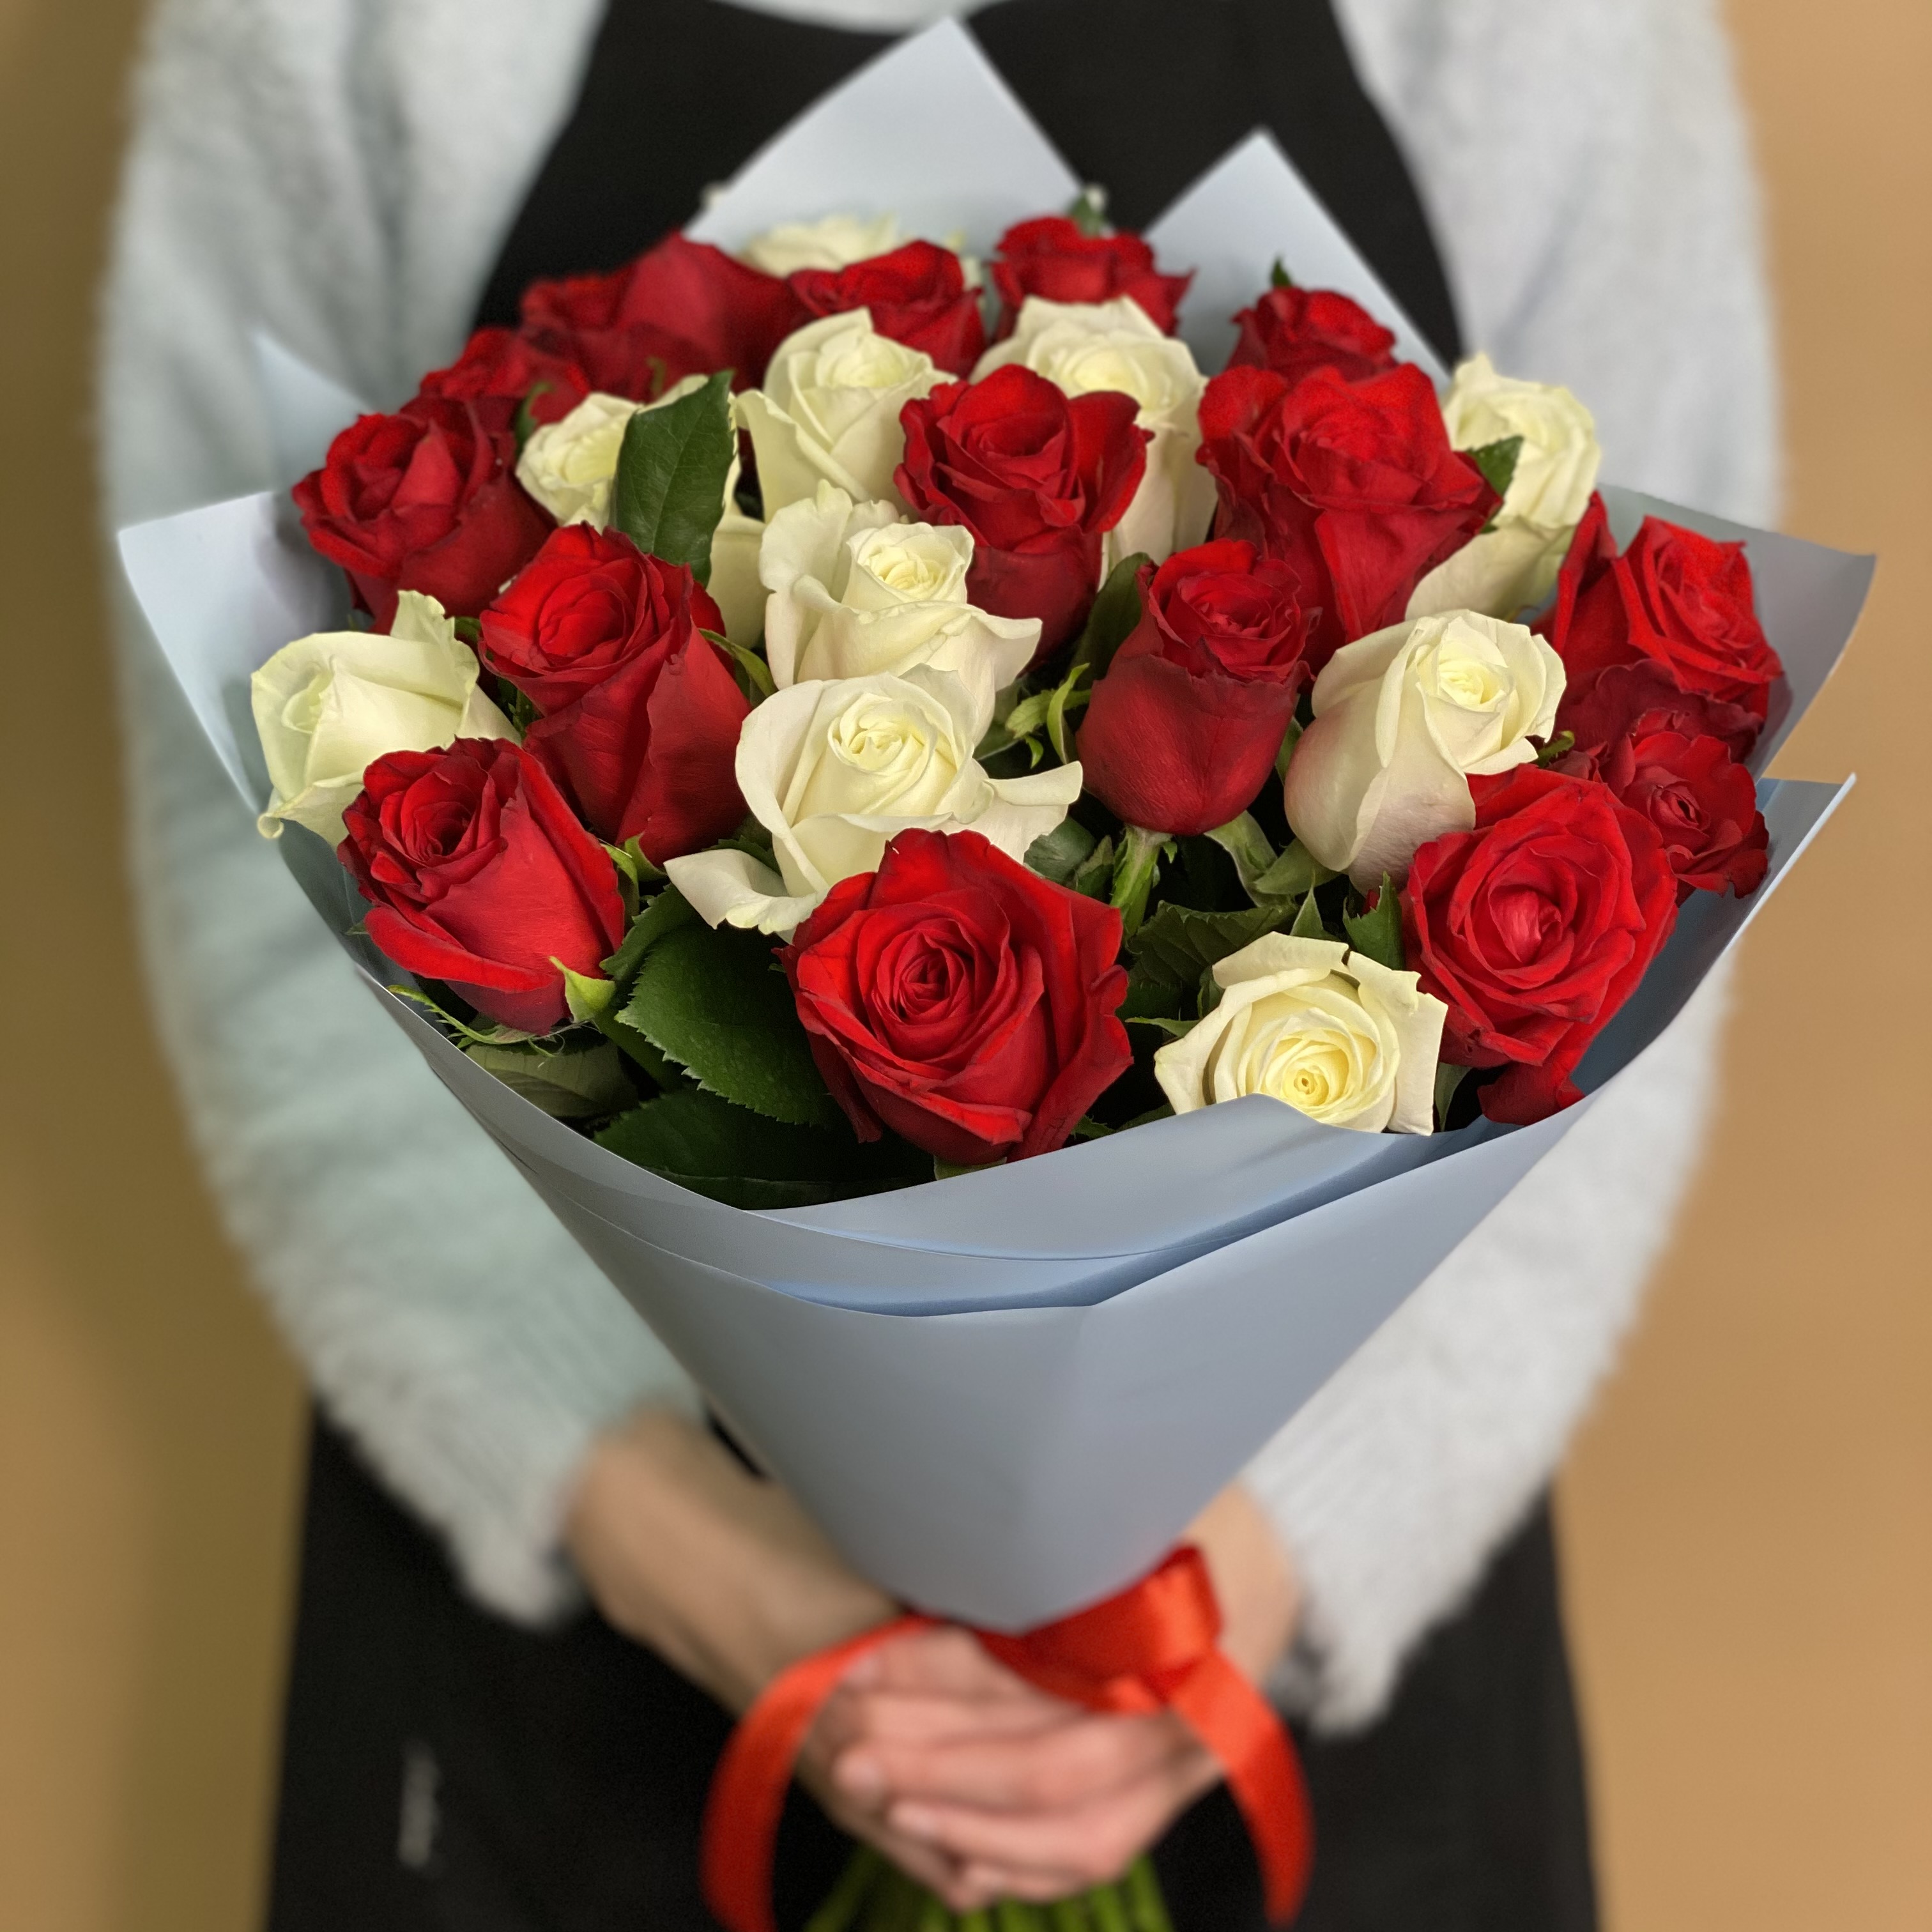 букет из 25 красных роз 70 см Букет из красных и белых роз 25 шт. (70 см)